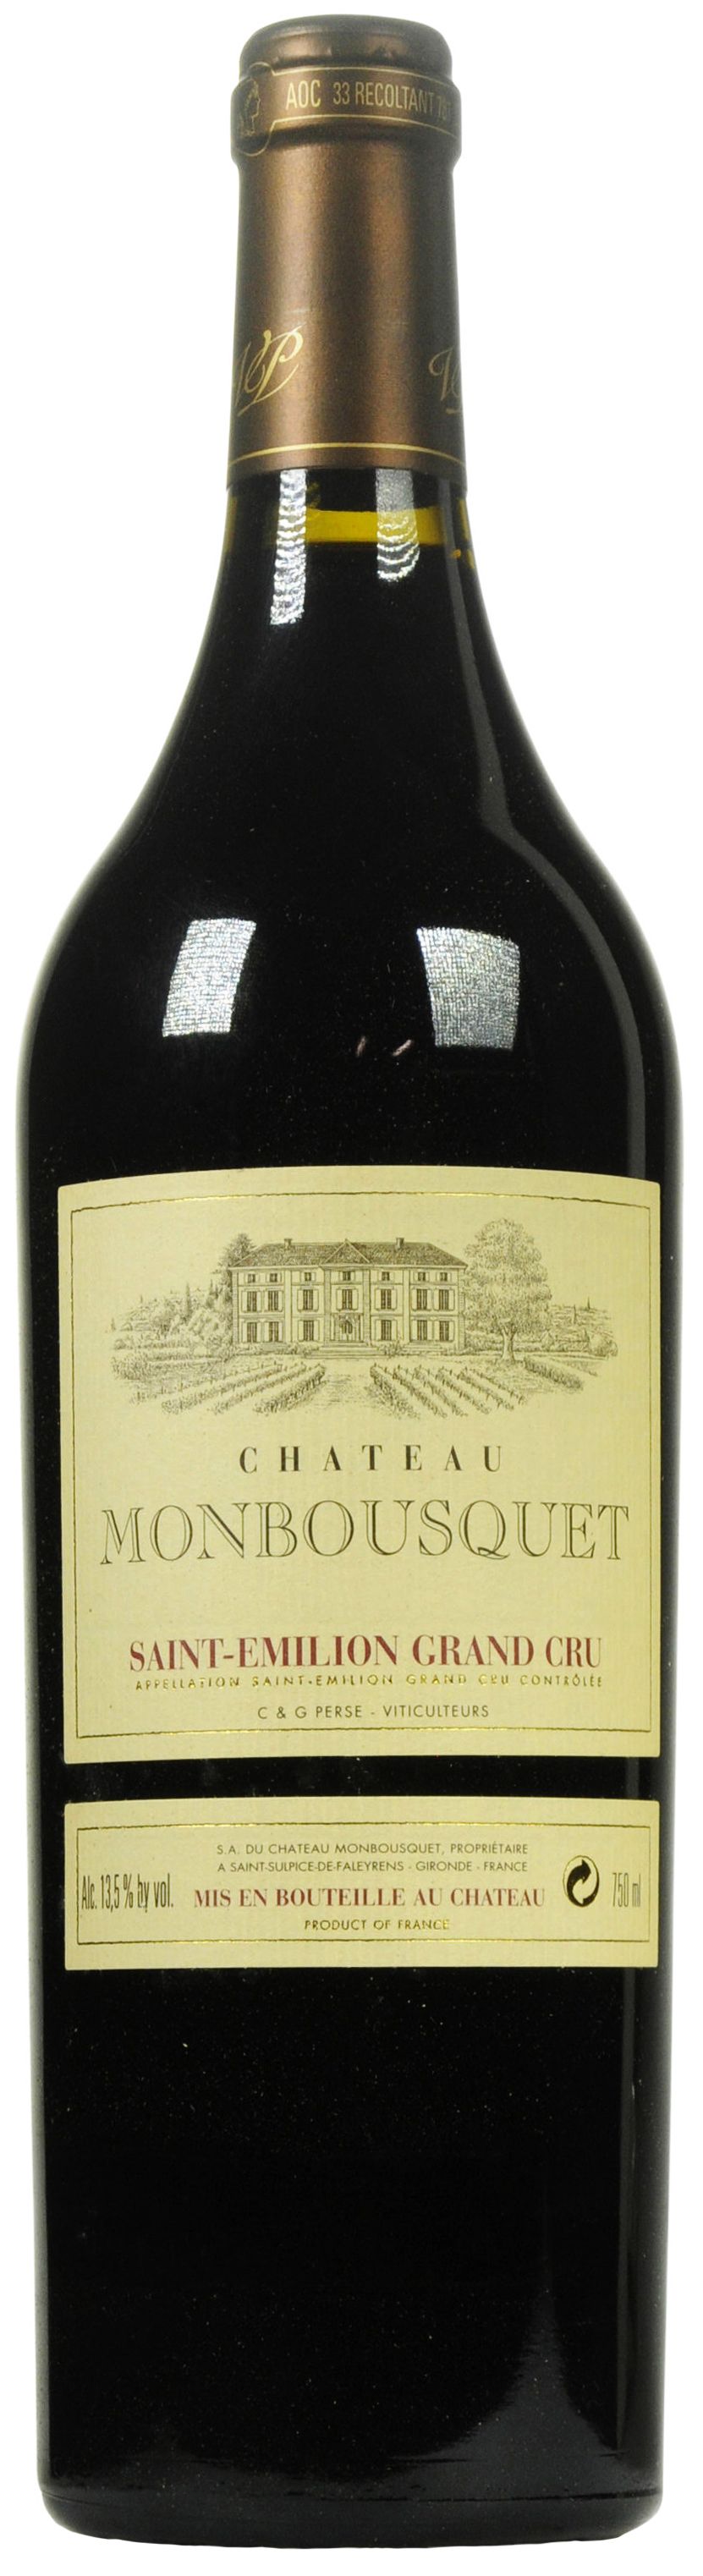 Chateau Monbousquet, Grand Cru Classe, 2001